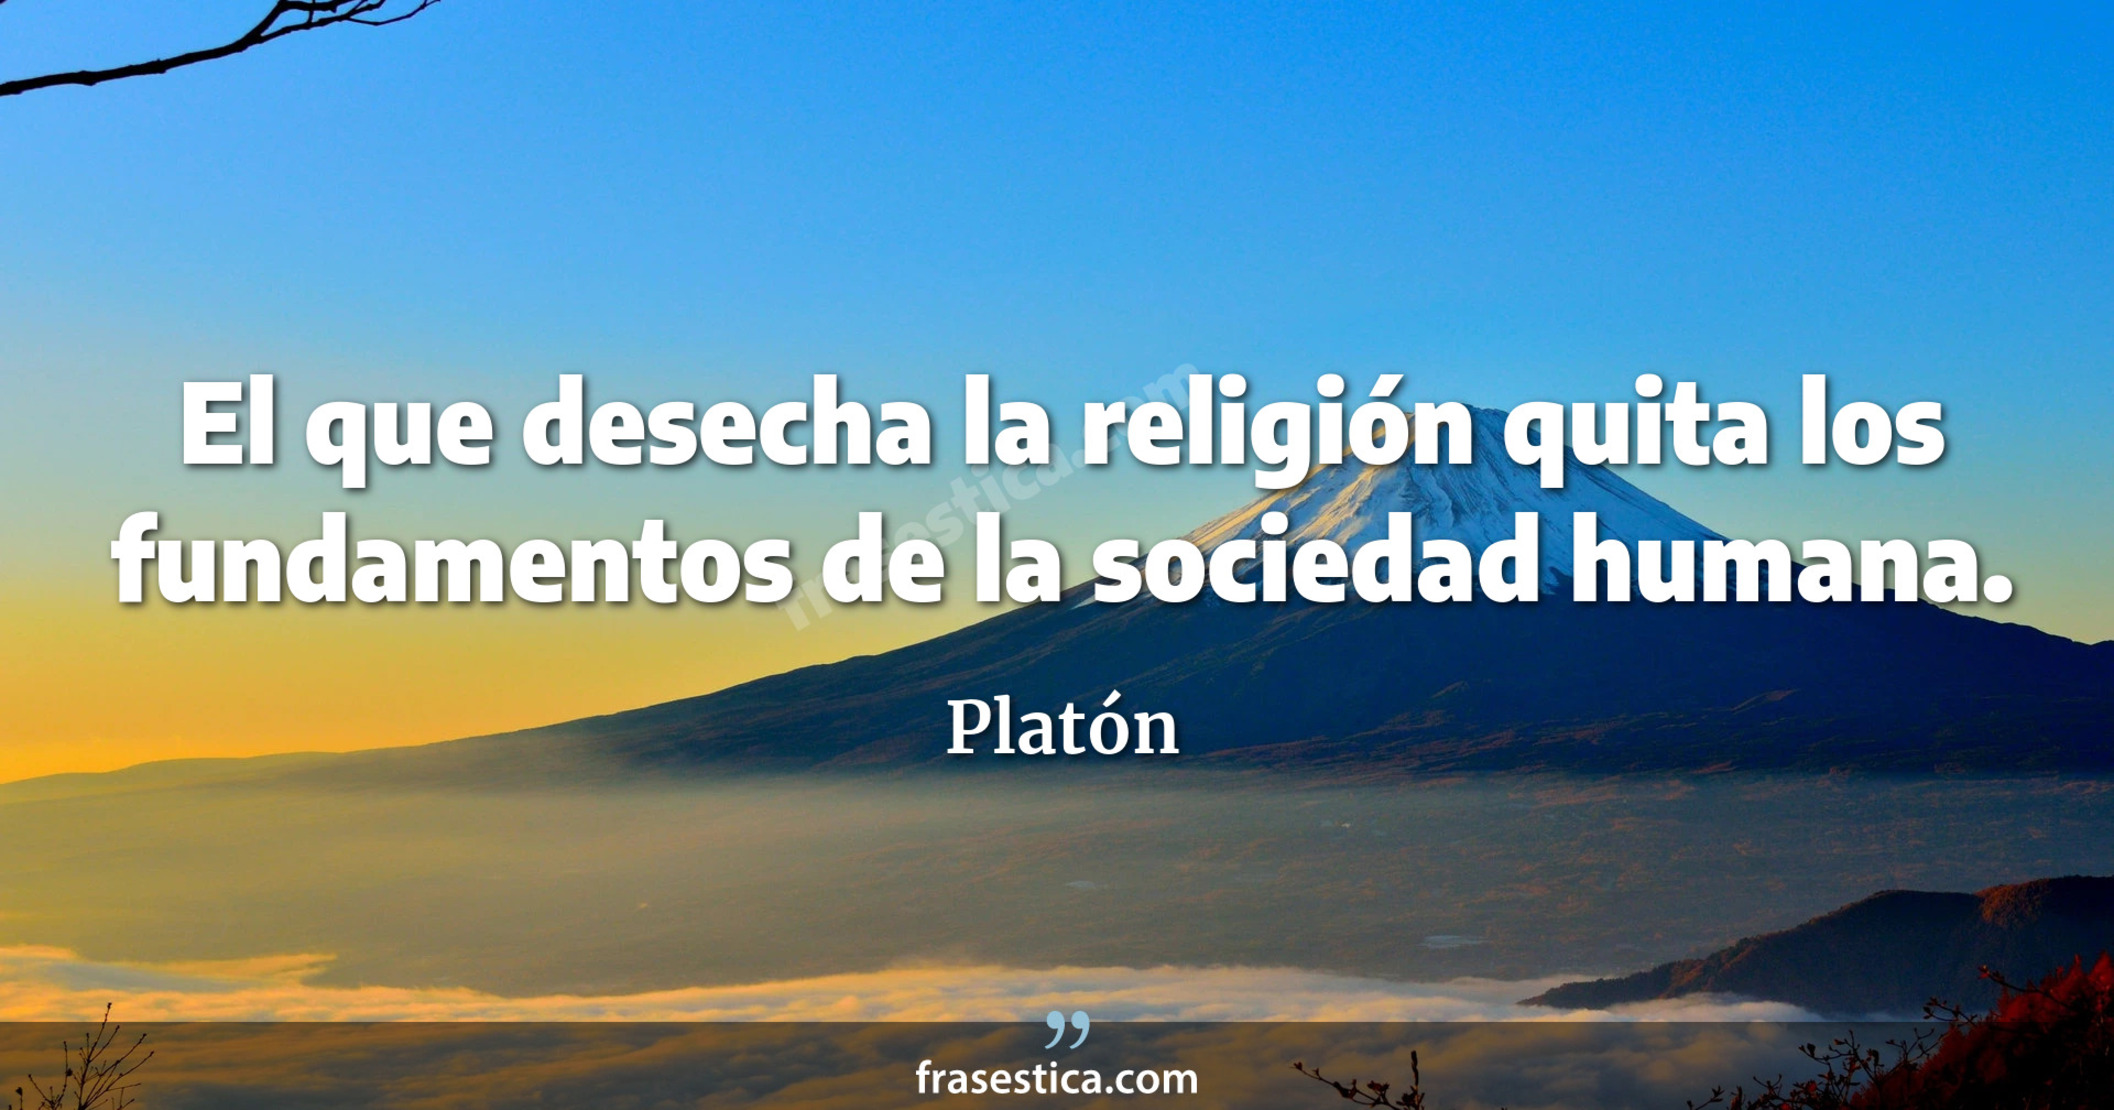 El que desecha la religión quita los fundamentos de la sociedad humana. - Platón